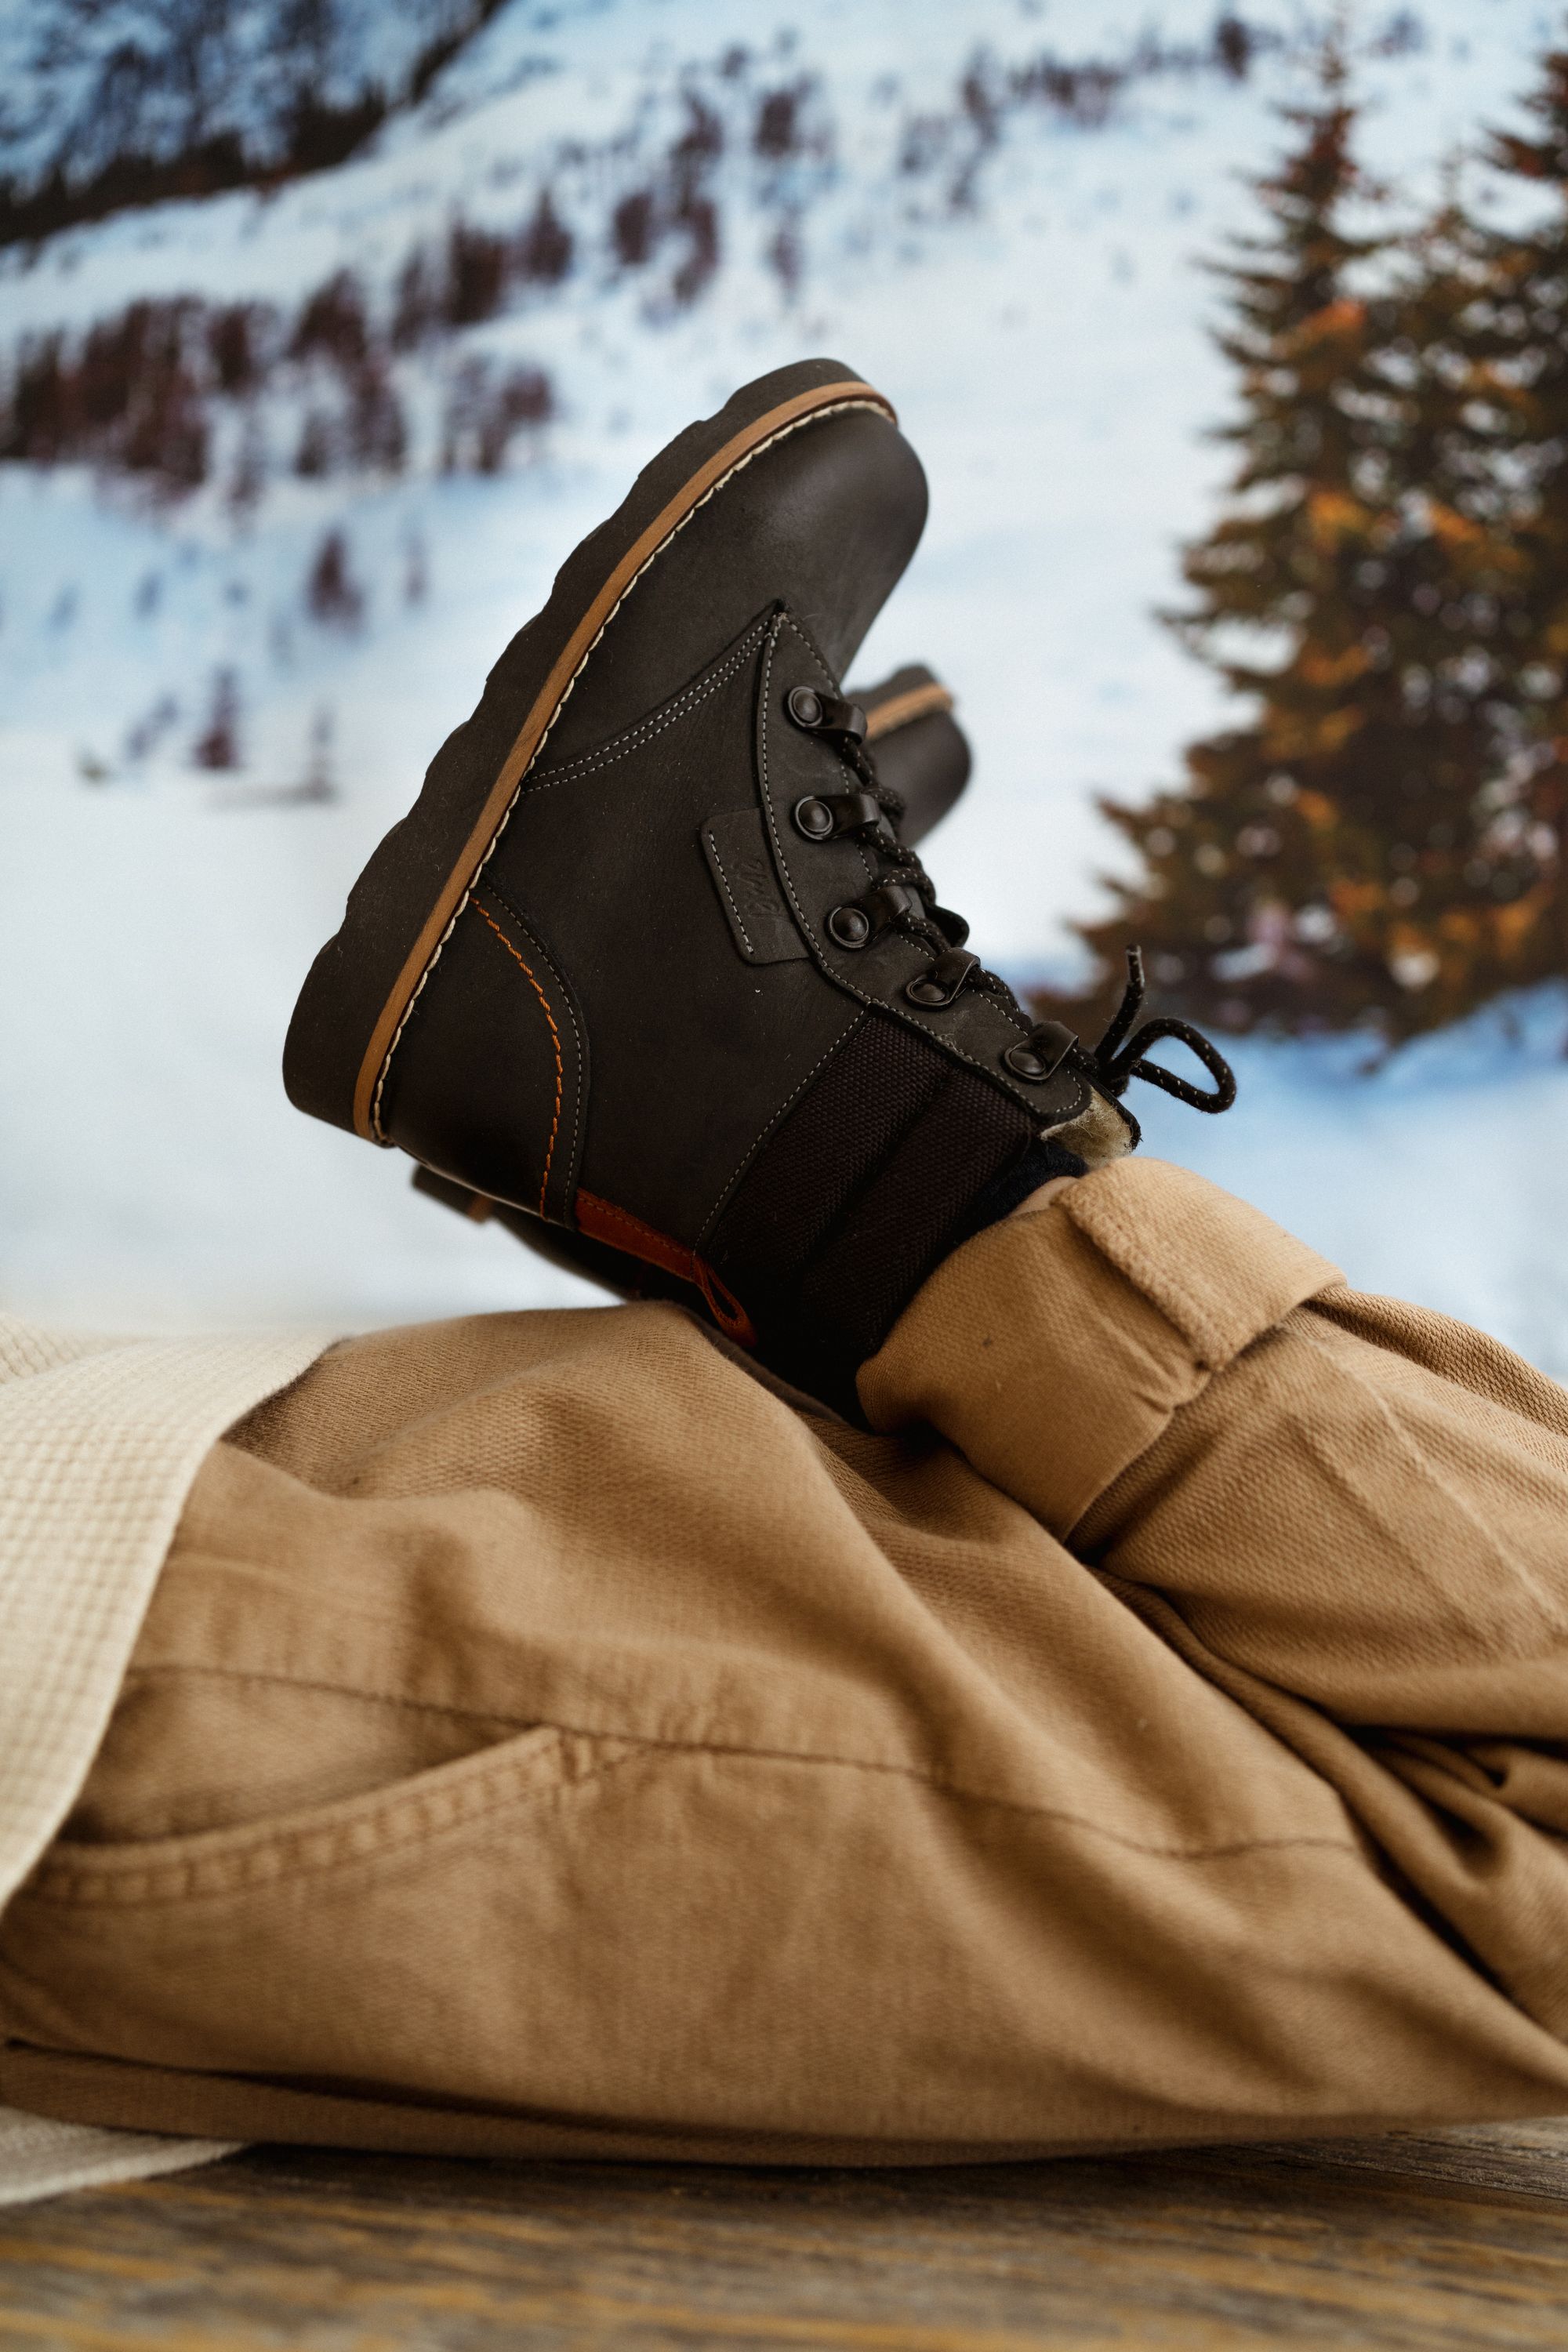 Dlaczego warto zainwestować w najlepsze zimowe buty dziecięce?  - poradnik